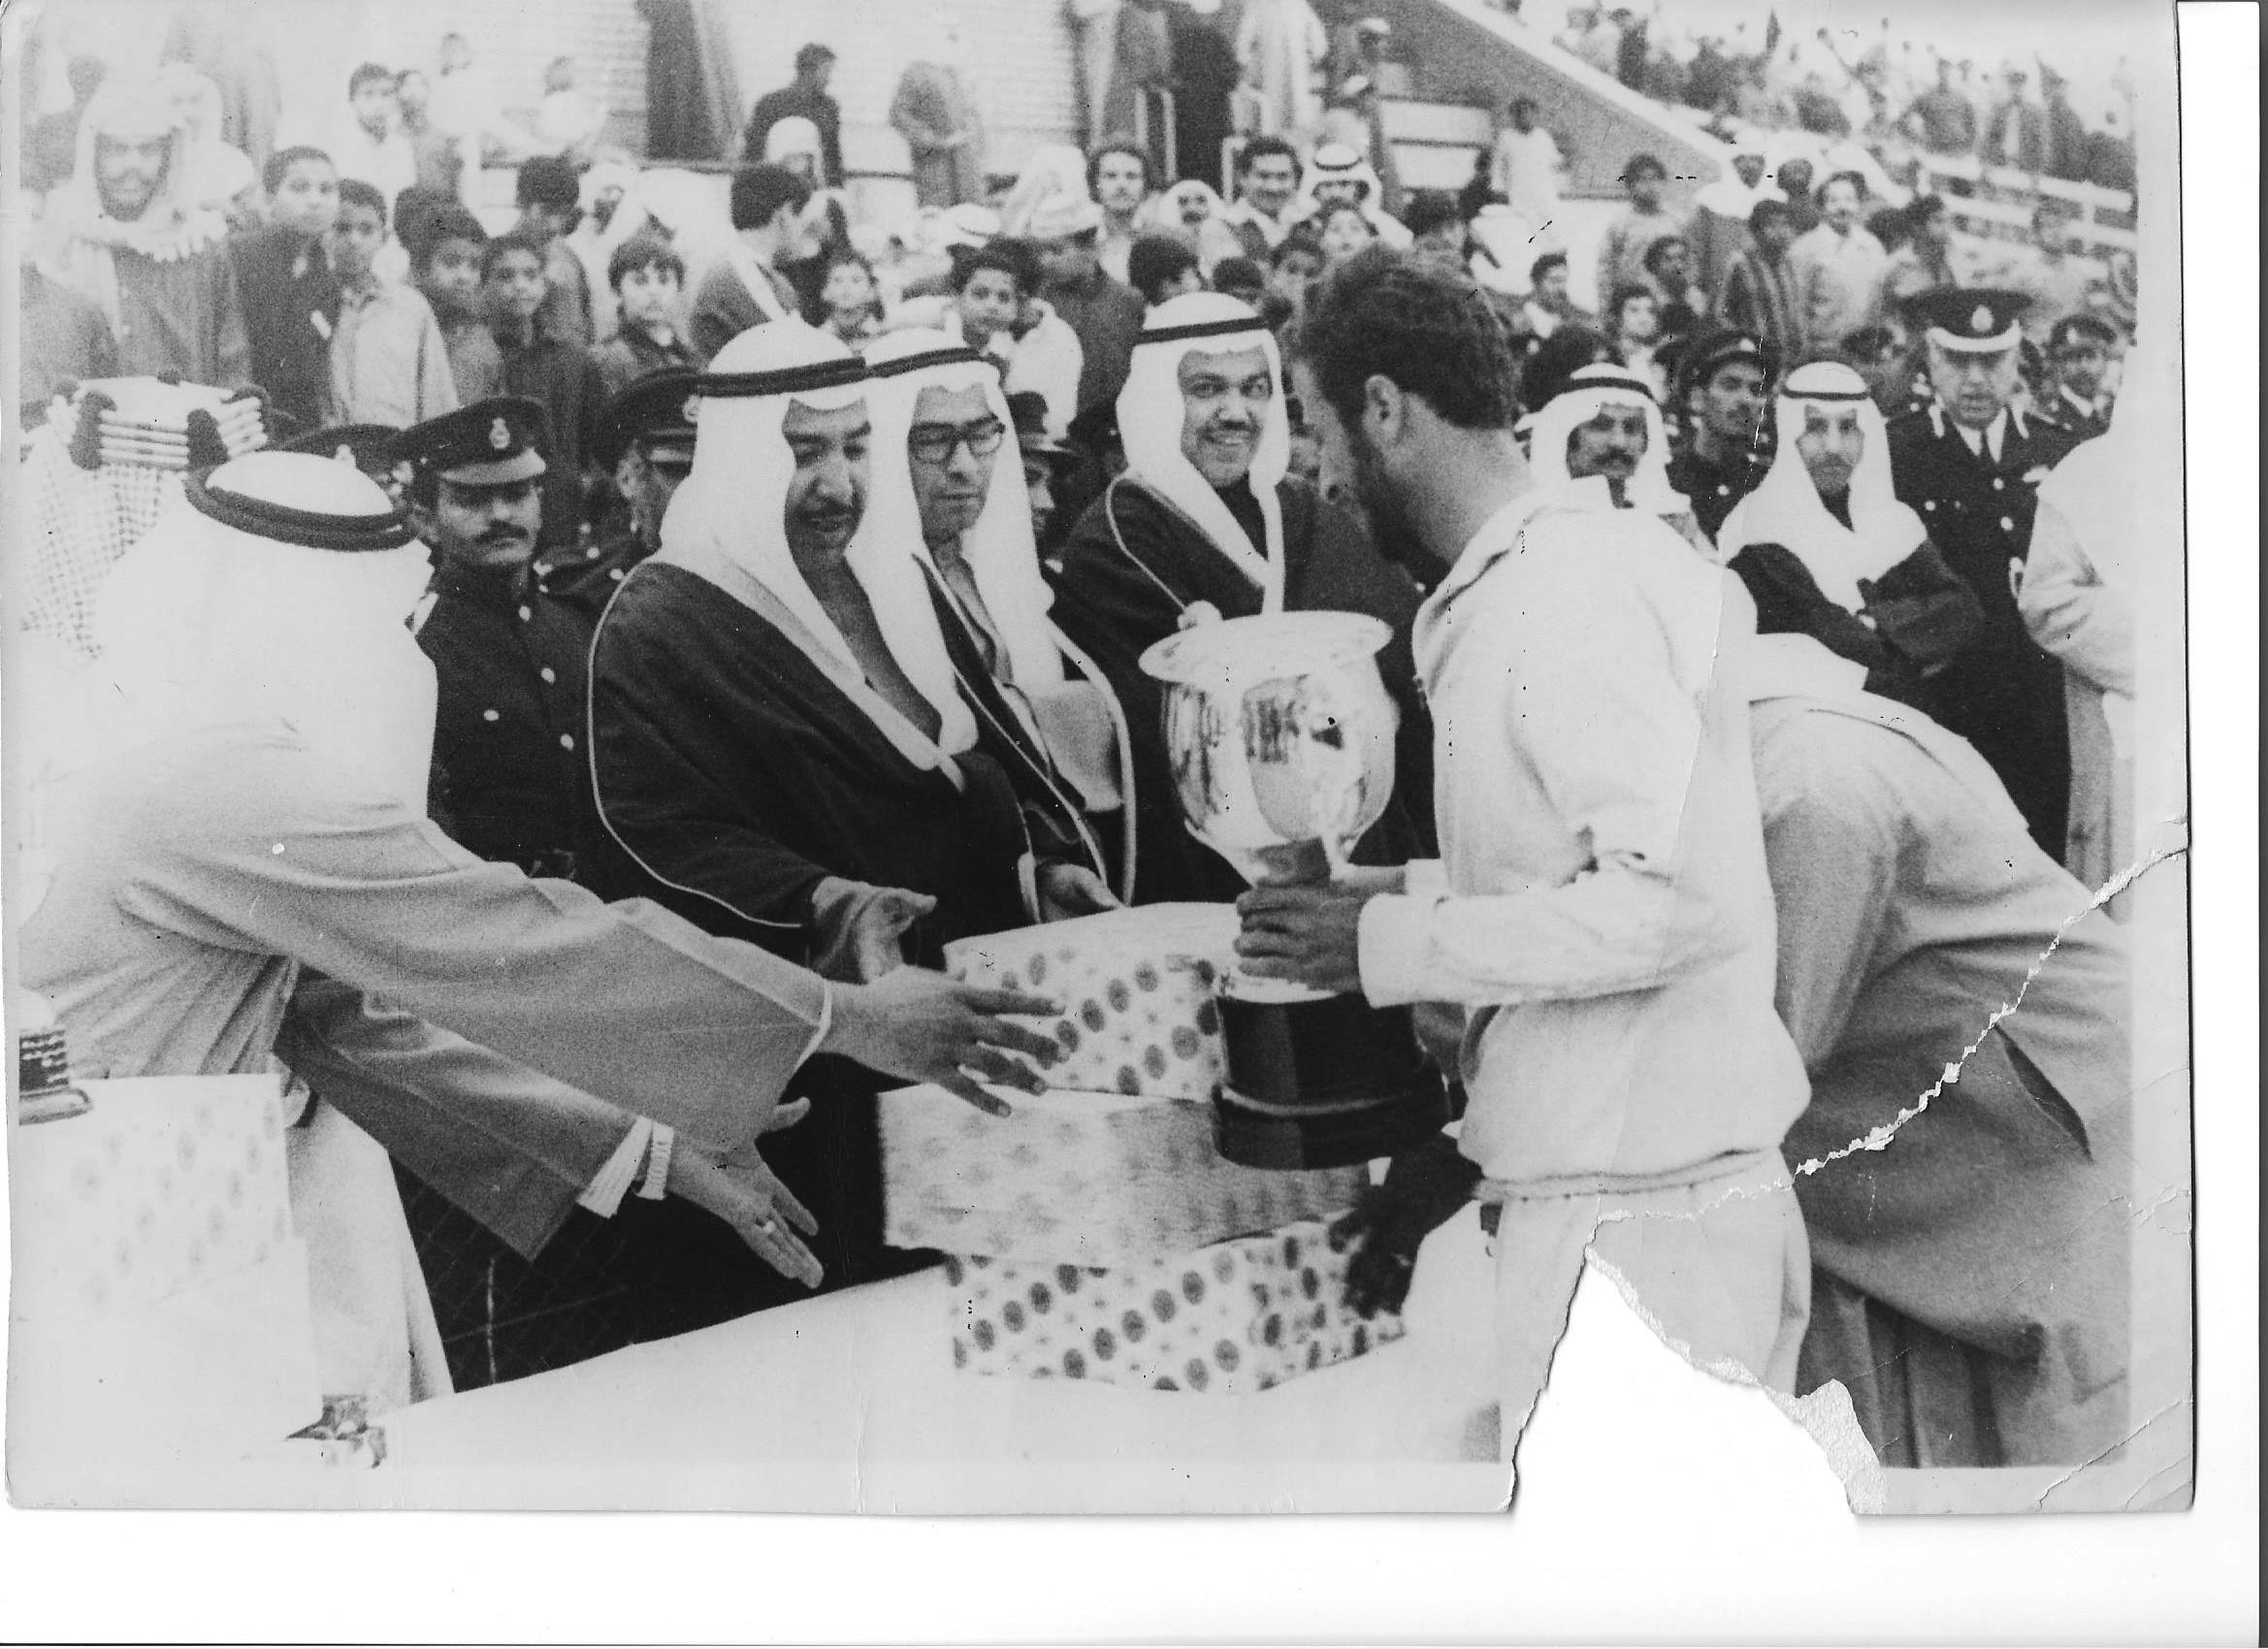 صورة ألمهندس خطاب عمر أبوأصبع ألسالم ألصقر فى بطولة سباق ألدراجات ألهوائية عام 1976 بطولة فلسطين والكويت